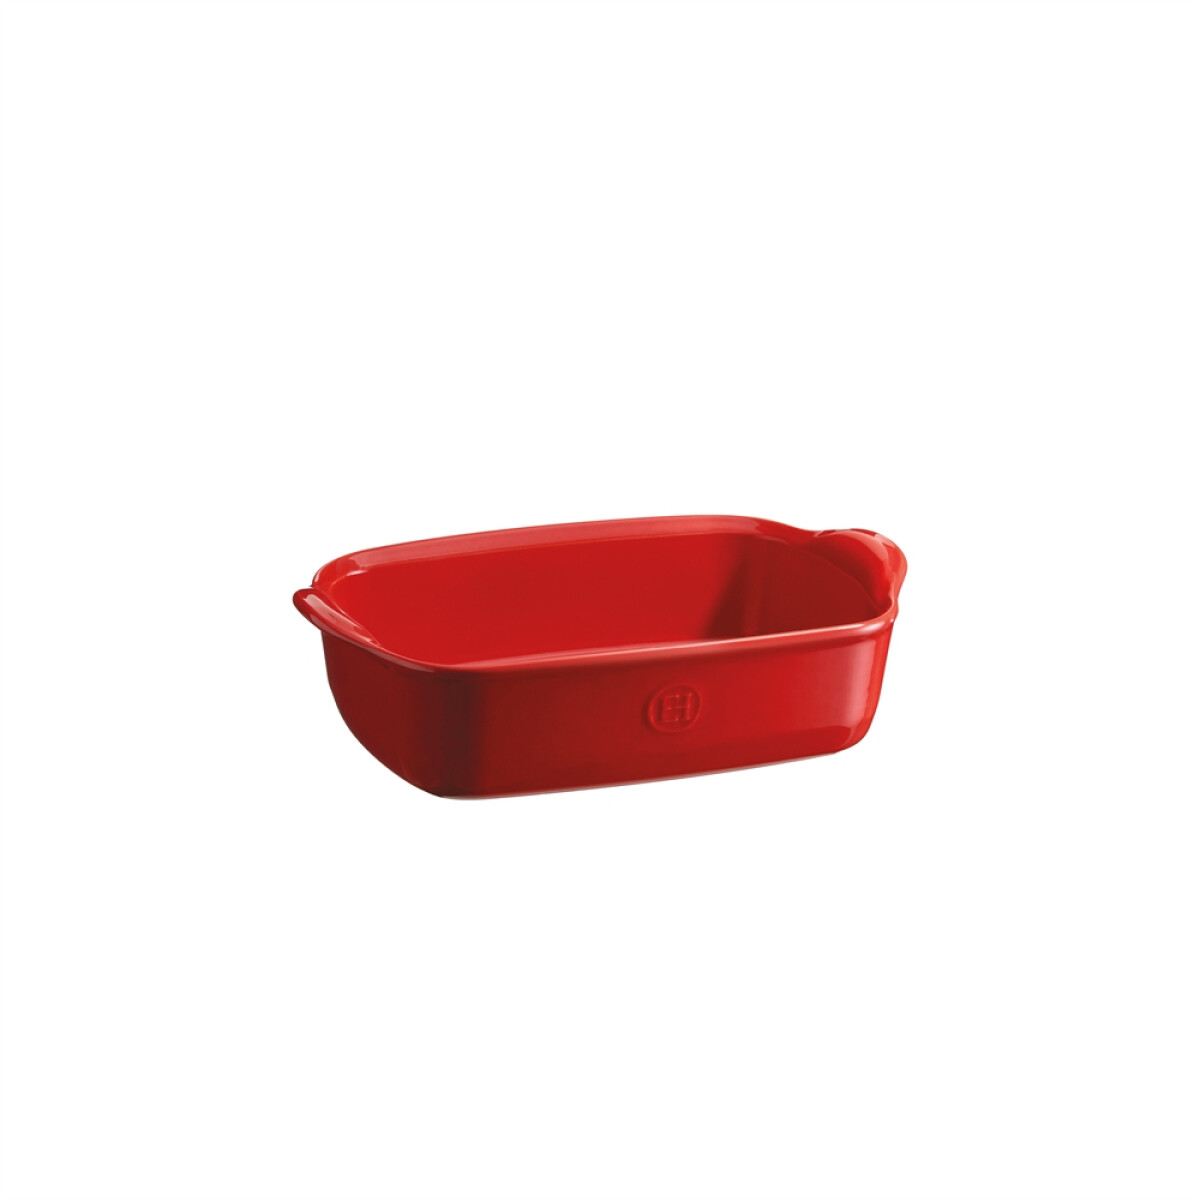 Керамична тава EMILE HENRY INDIVIDUAL OVEN DISH - 22х15 см, цвят червен